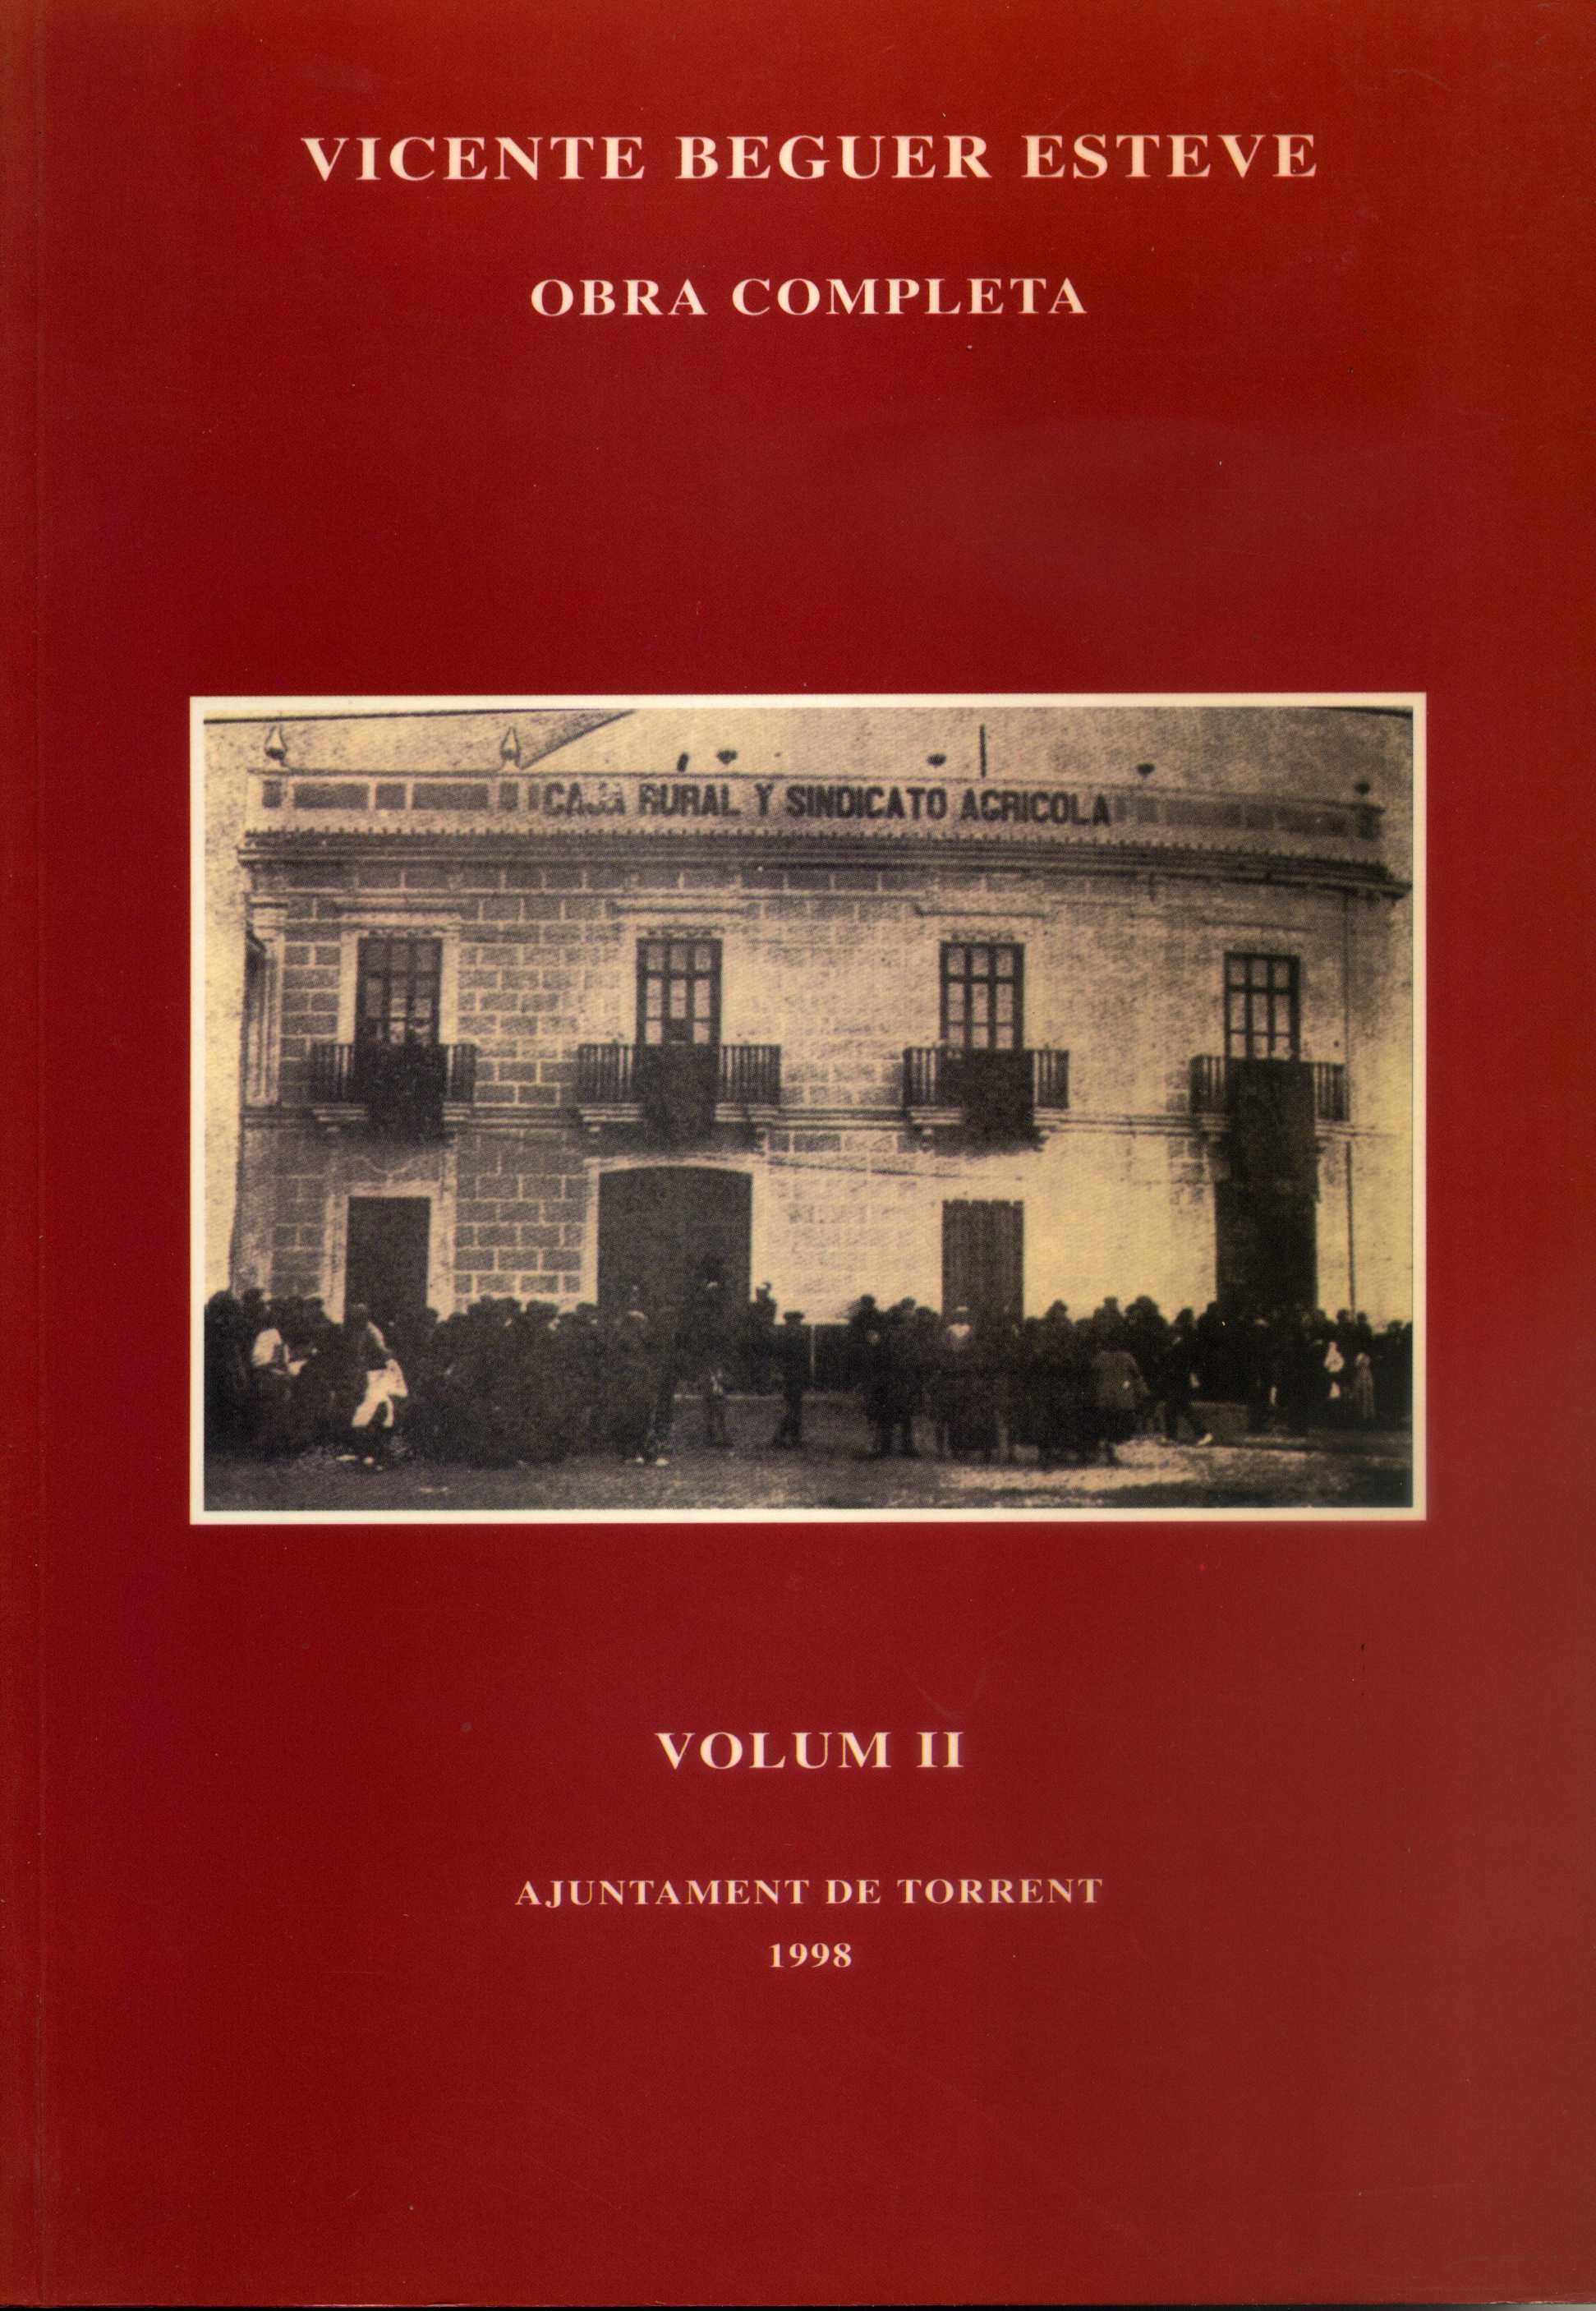 La Caja General de Ahorros y Monte de Piedad de Torrente (1906-1970)